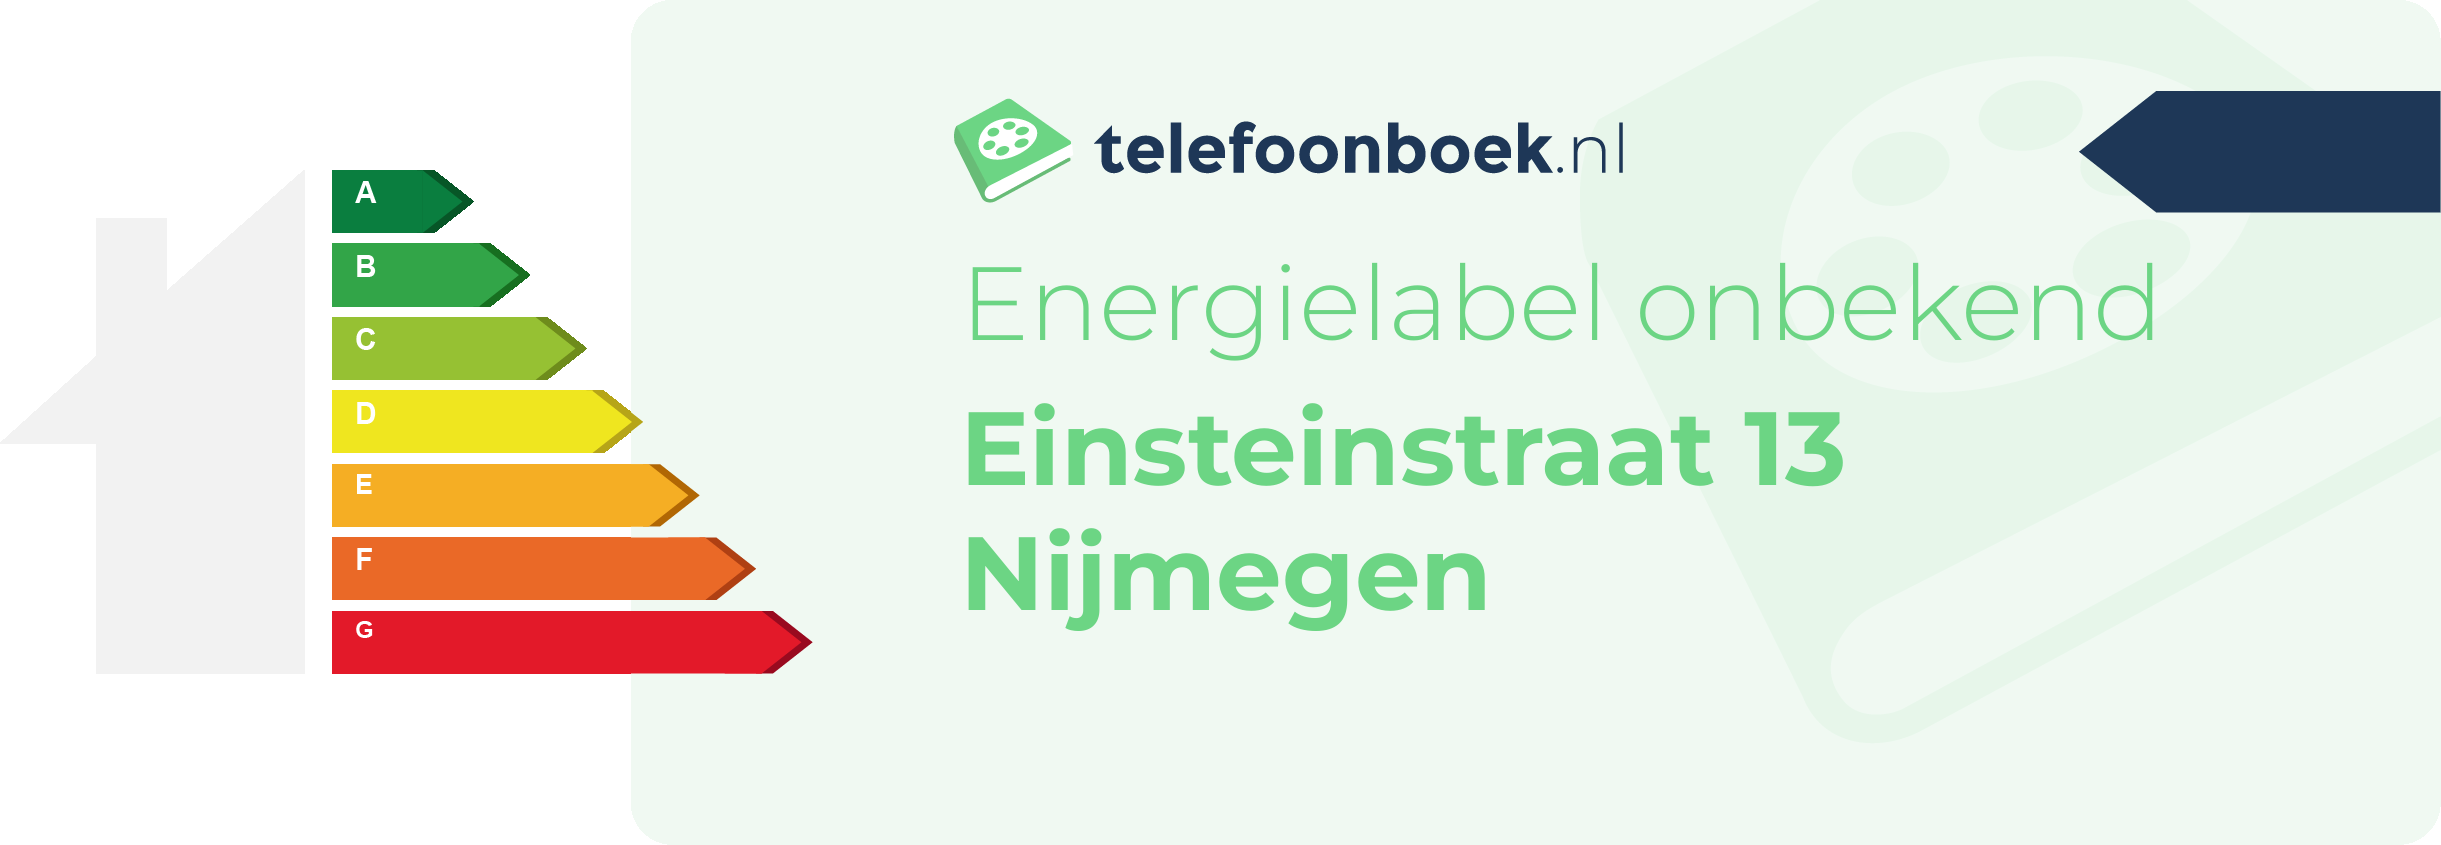 Energielabel Einsteinstraat 13 Nijmegen